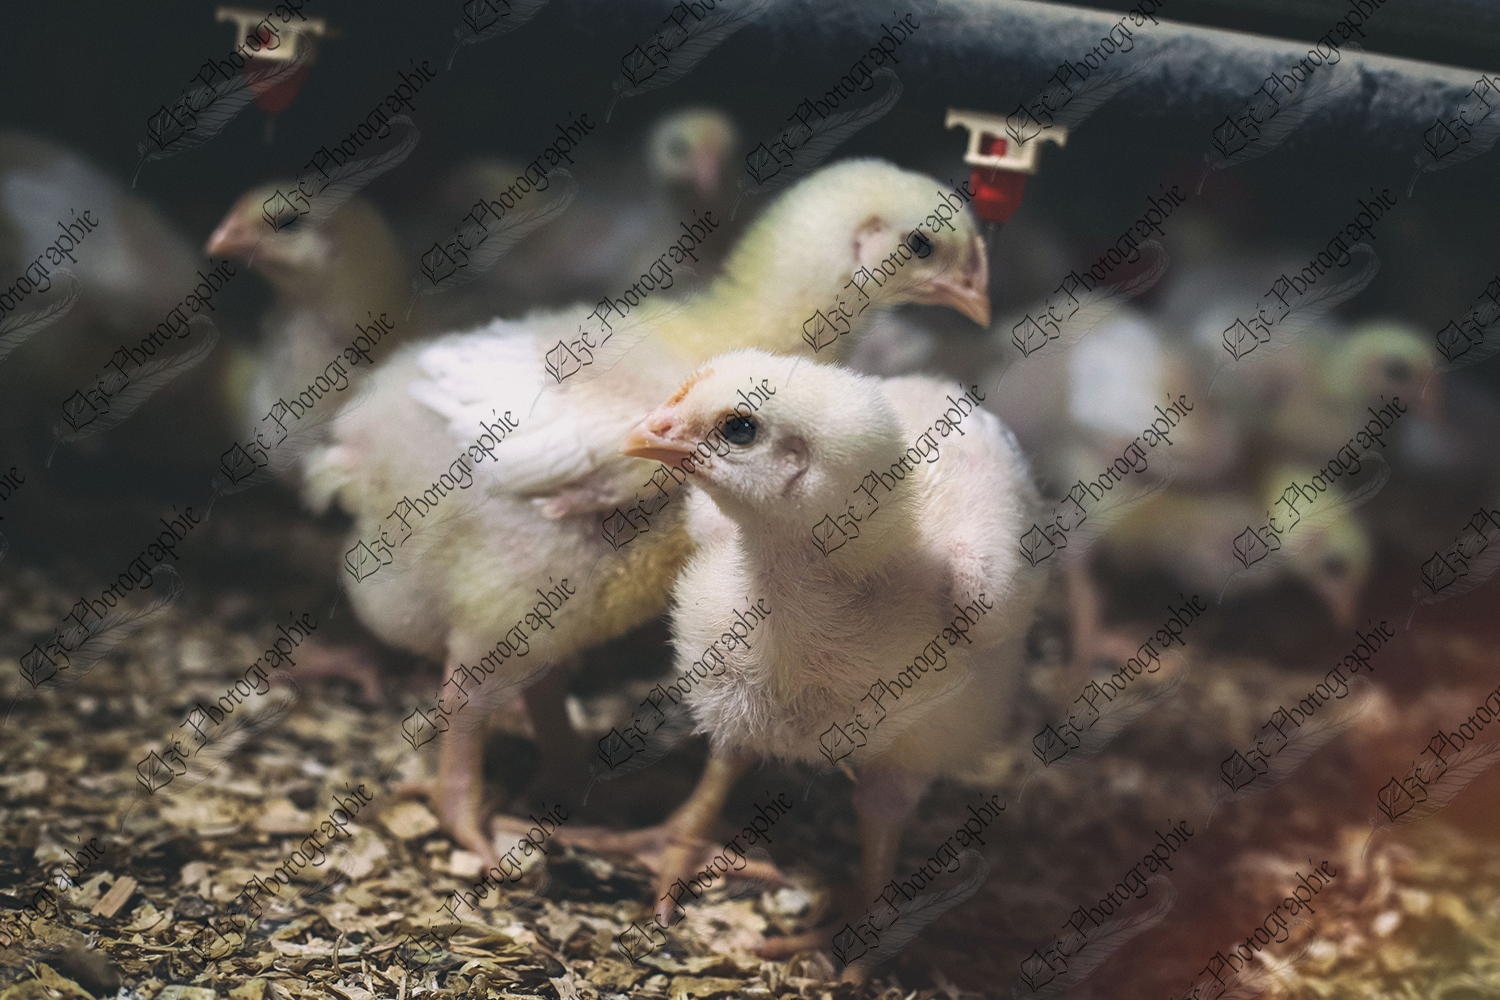 elze_photo_9201_litiere_elevage_poulet_poultry_farm